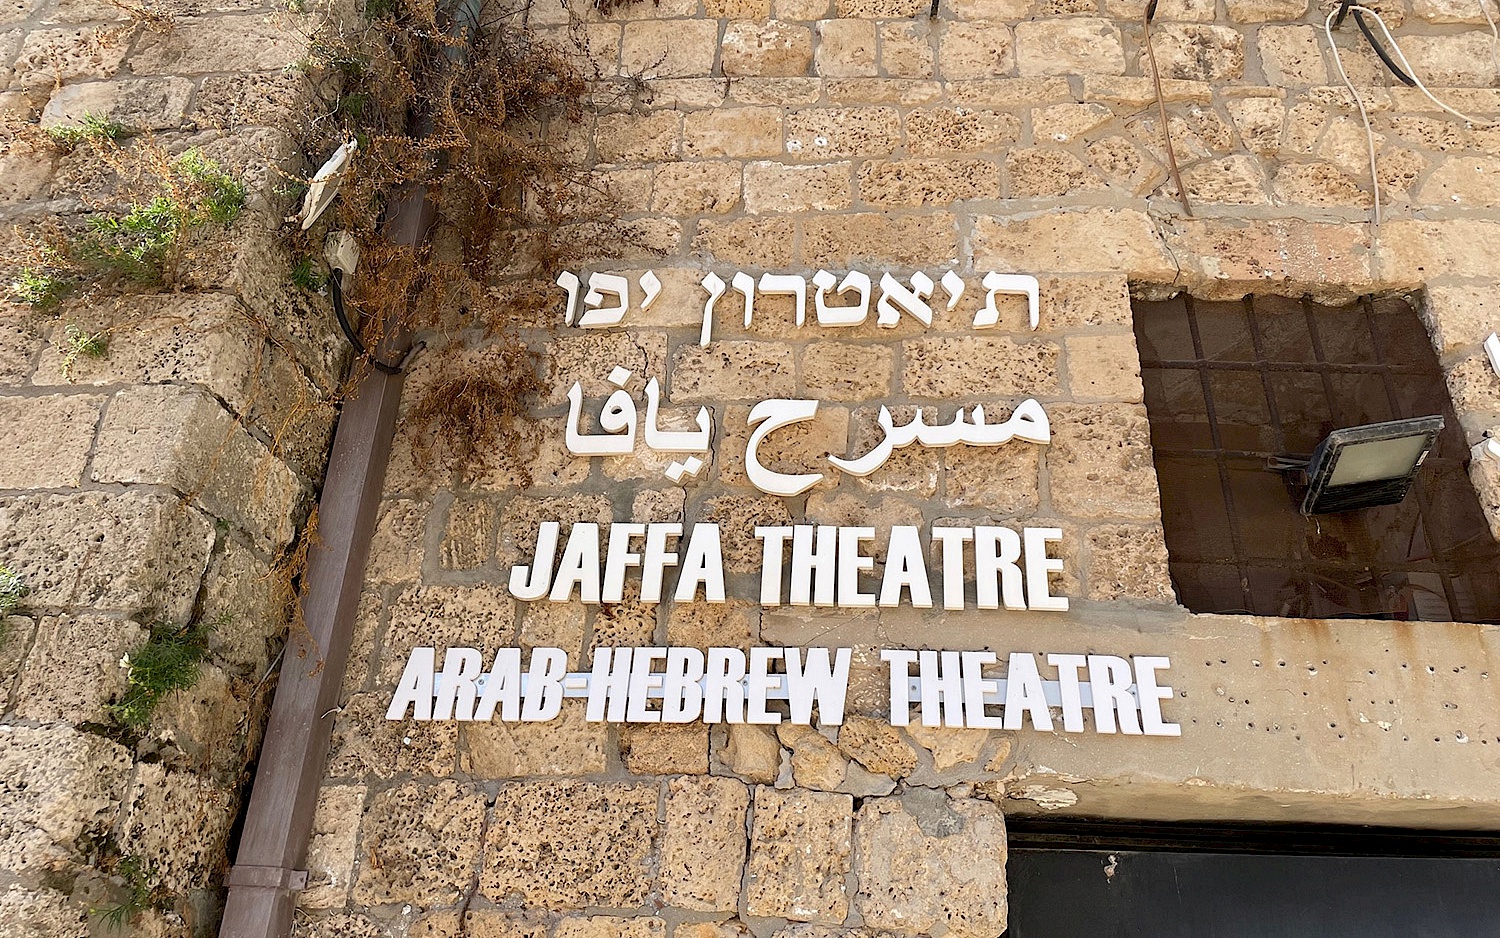 Fassade des Jaffa Theatre, auf der der Name des Theaters in hebräischen, arabischen und römischen Schriftzeichen geschrieben steht.